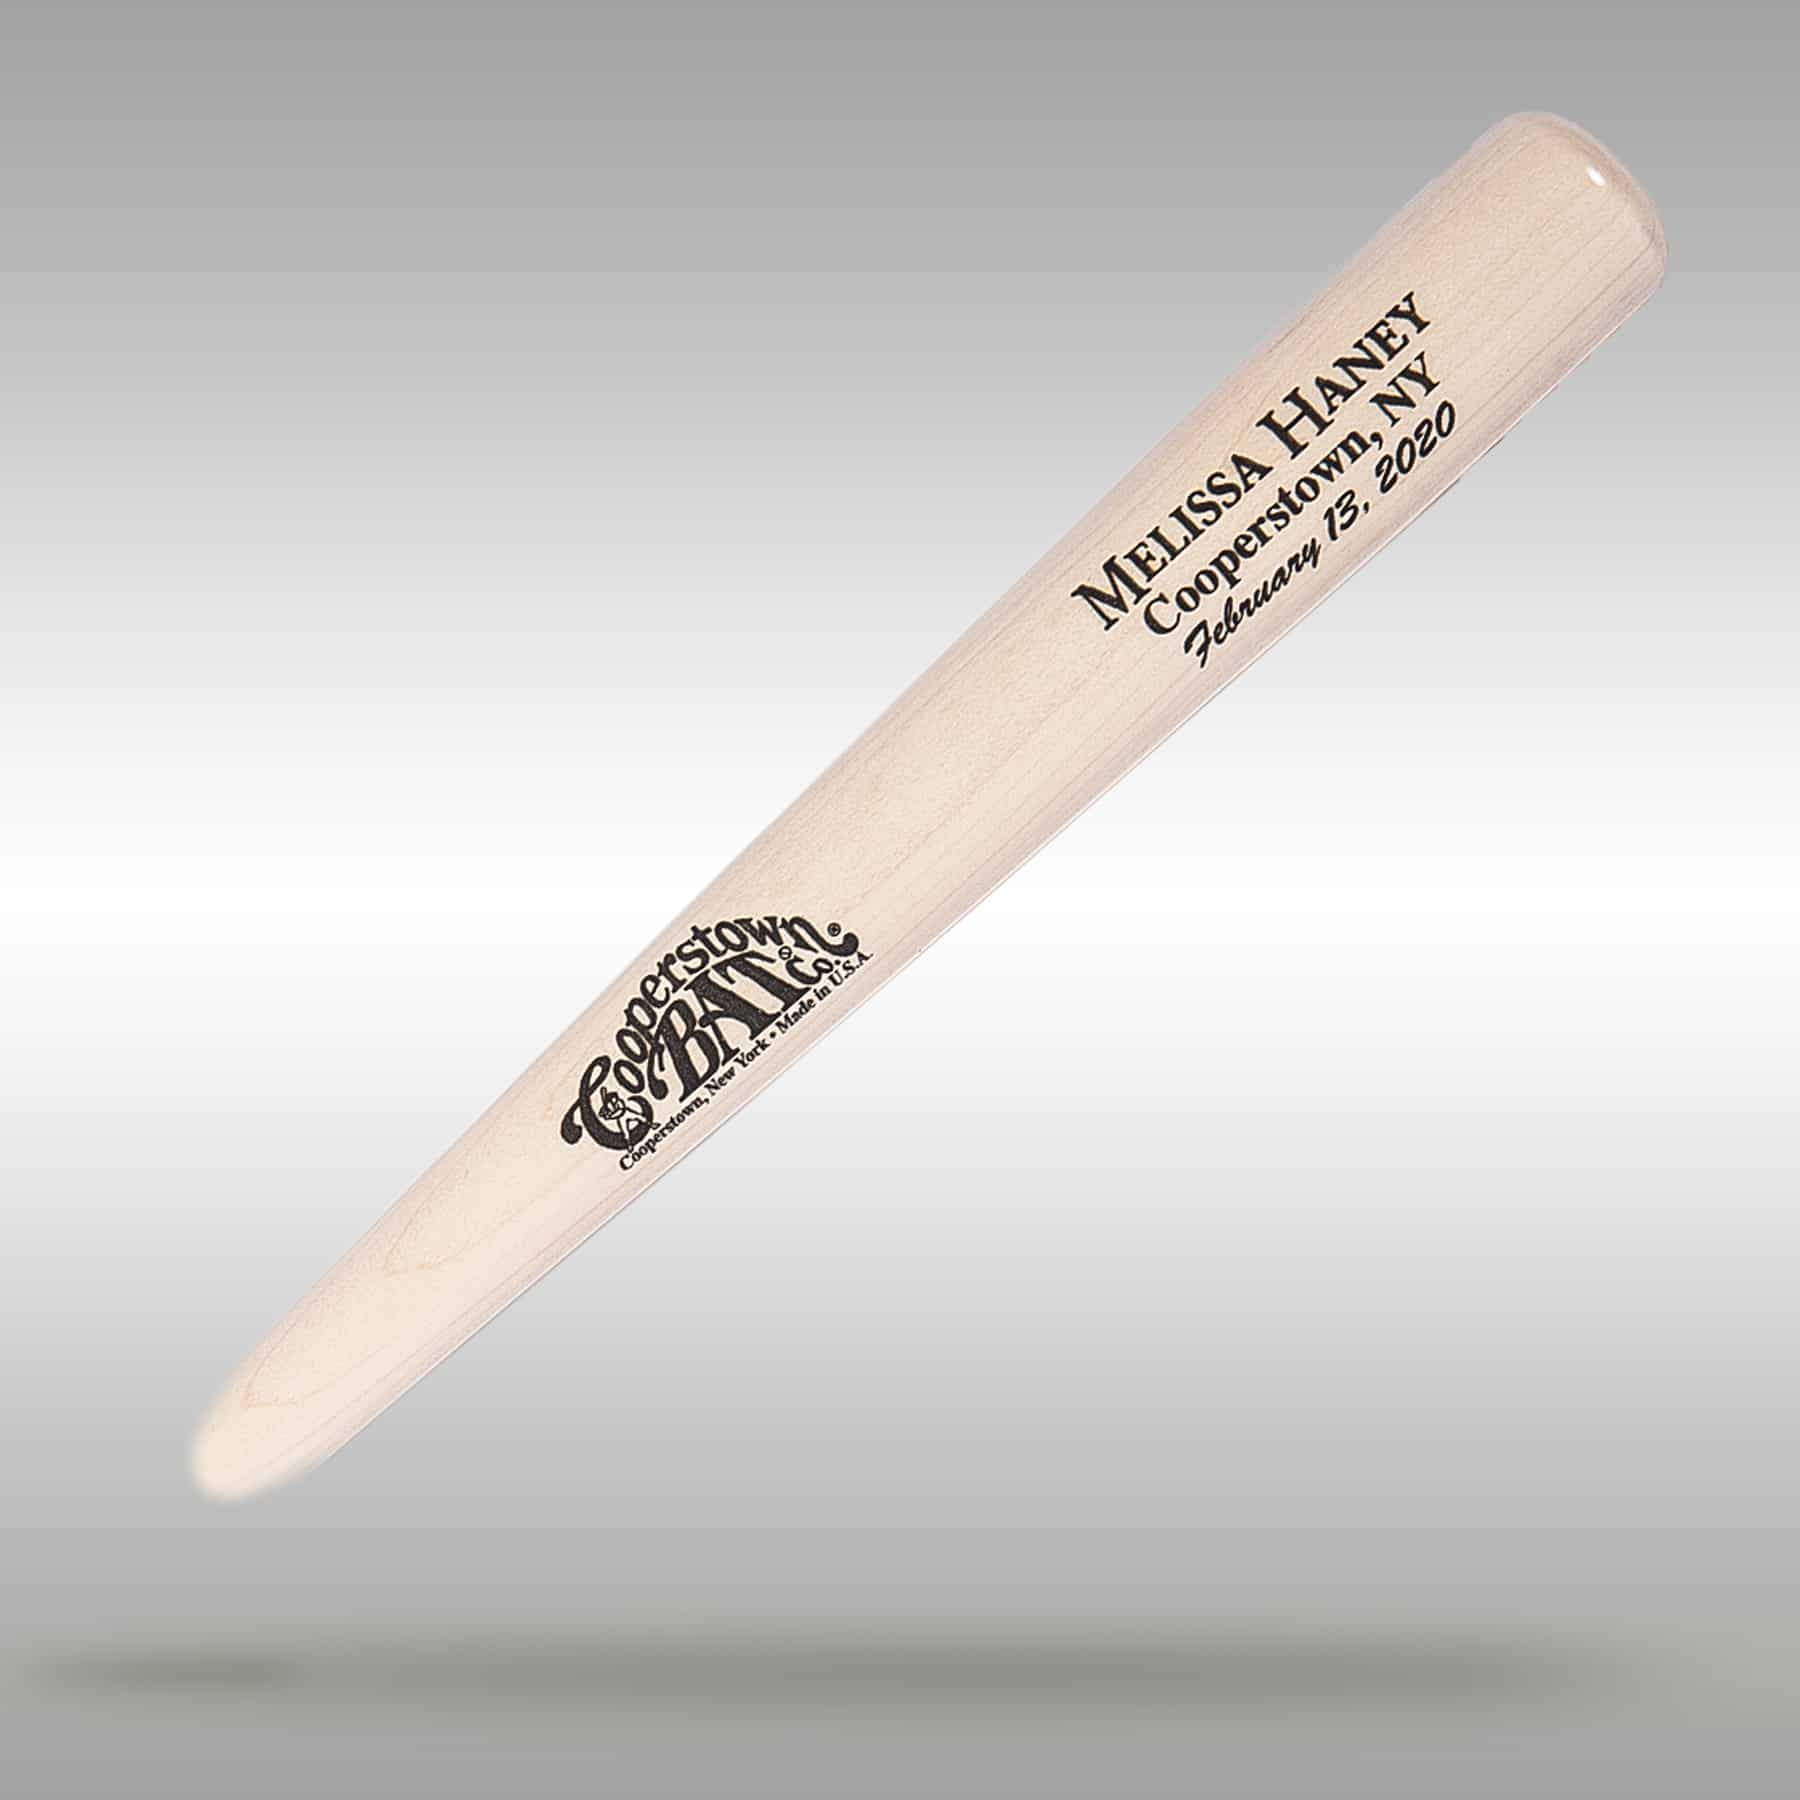 Personalized Baseball Bats - Bat Company